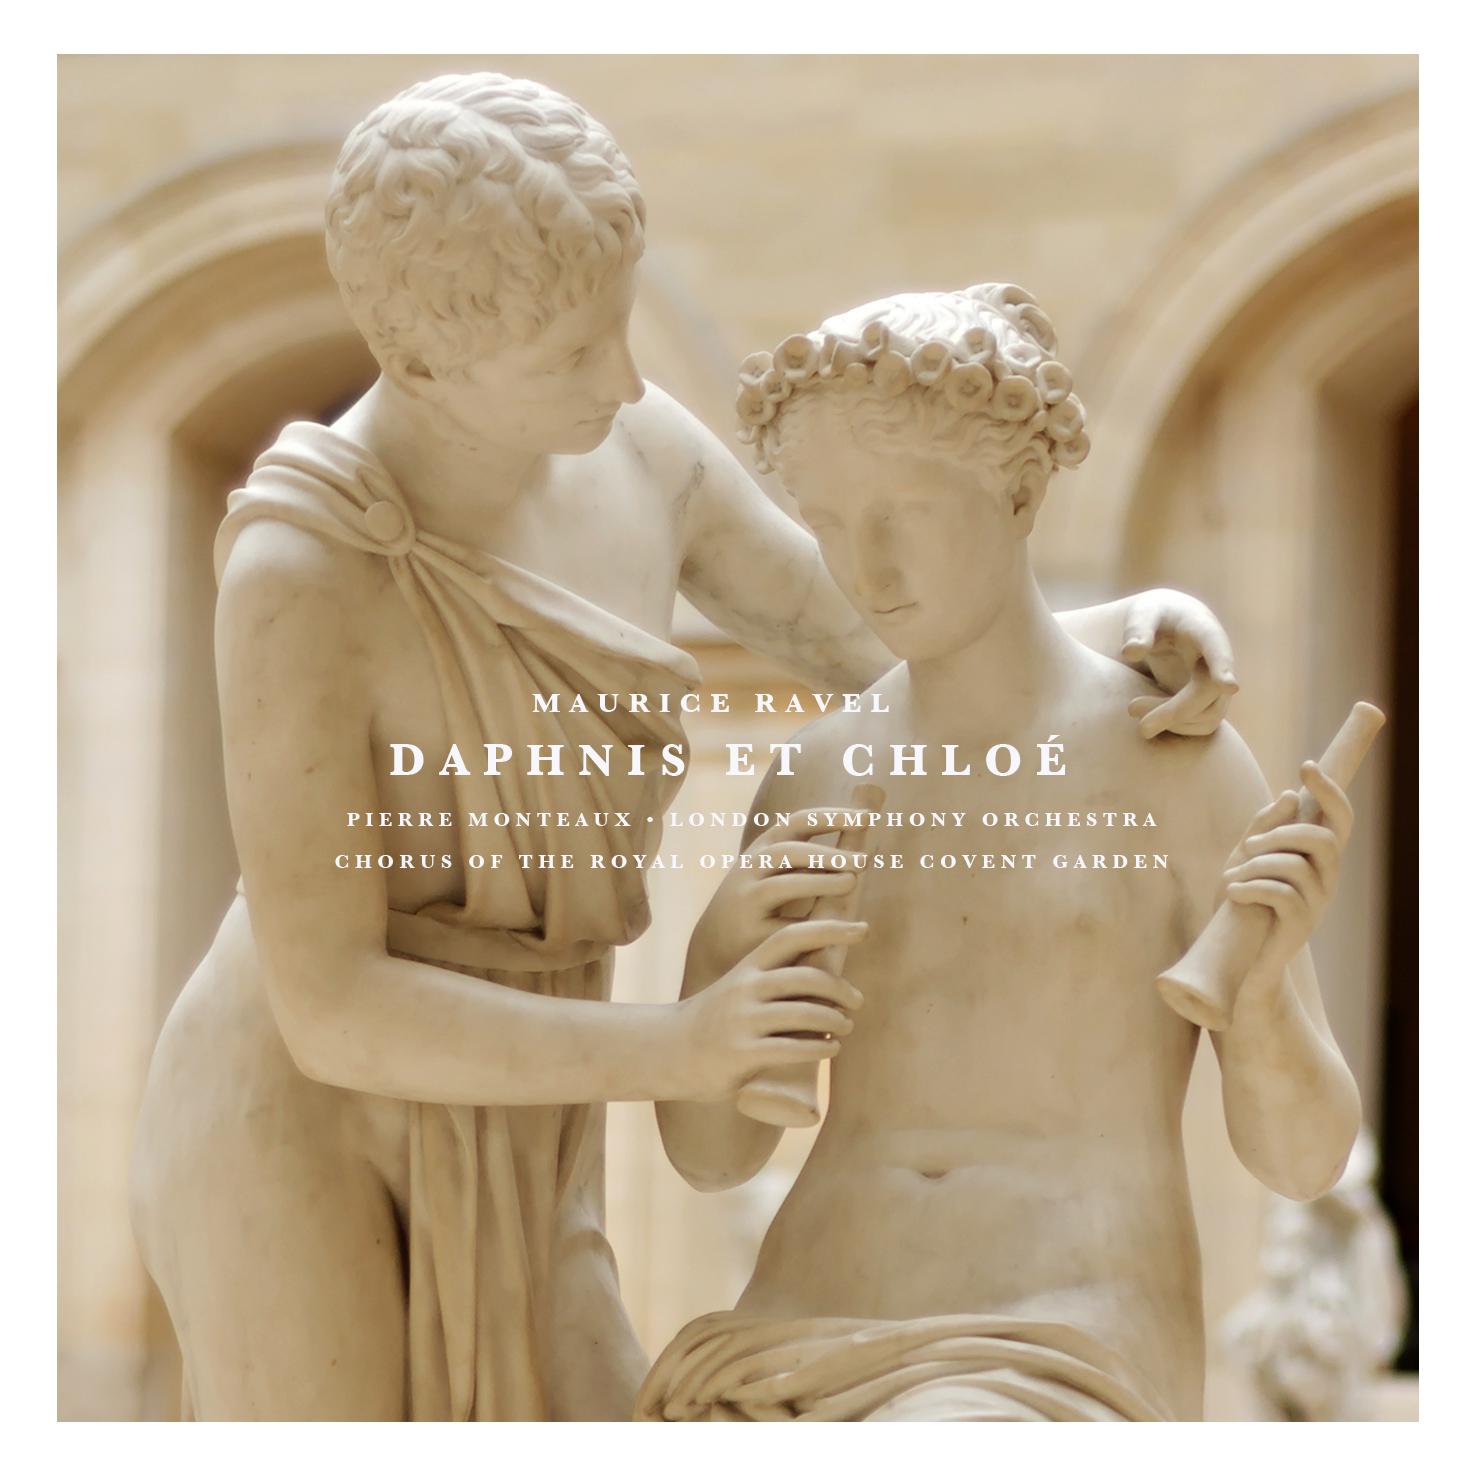 Daphnis Et Chloe: Part I " Danse lente et myste rieuse des Nymphes"